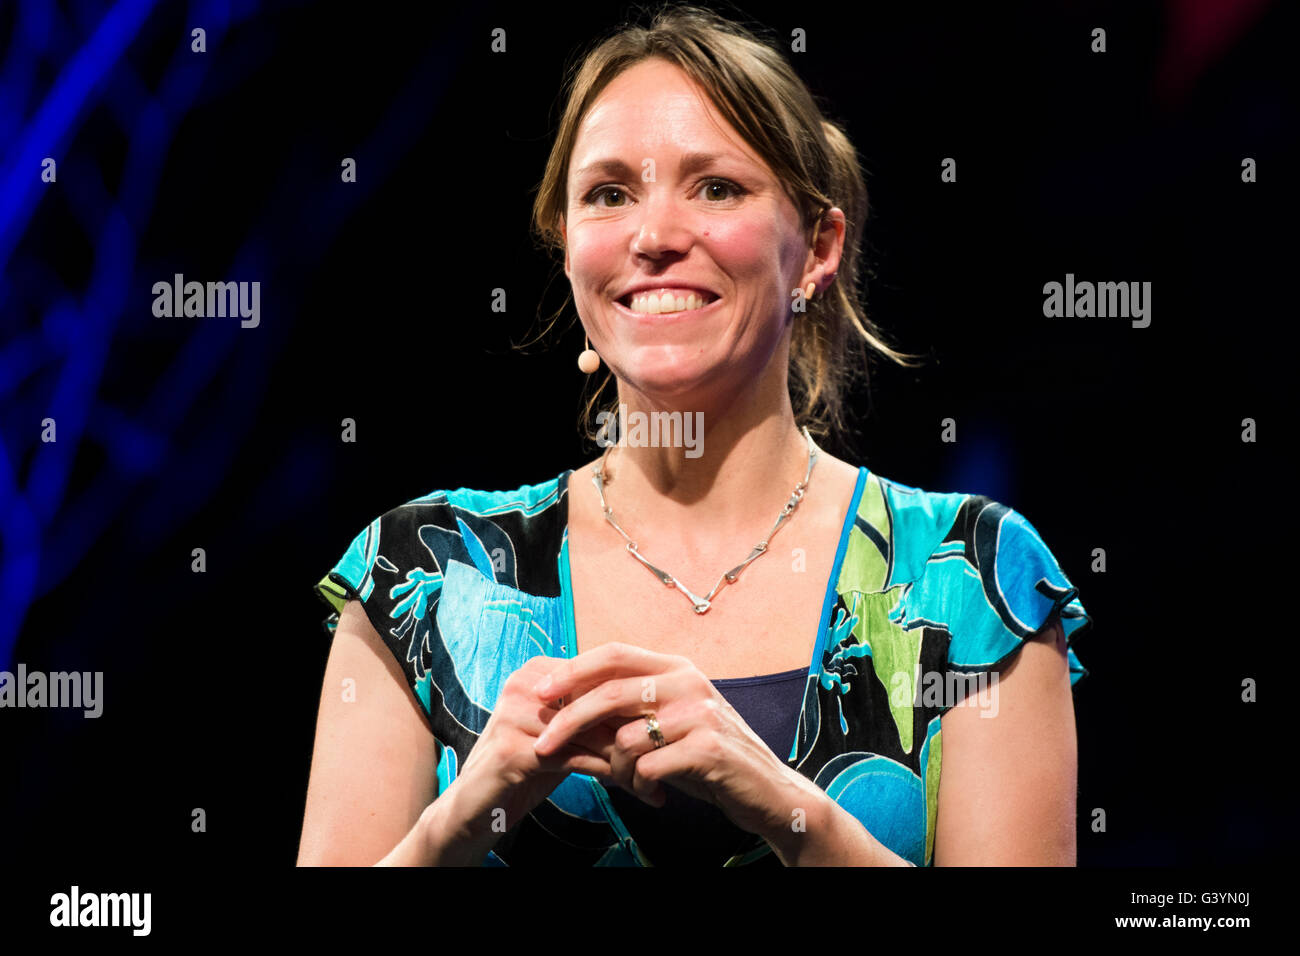 Dr Anne Critchlow, neuroscientifique, Cambridge, présentateur de télévision scolaire, sciences popularist, parlant sur scène à l'Hay Festival, le samedi 28 mai 2016 Banque D'Images